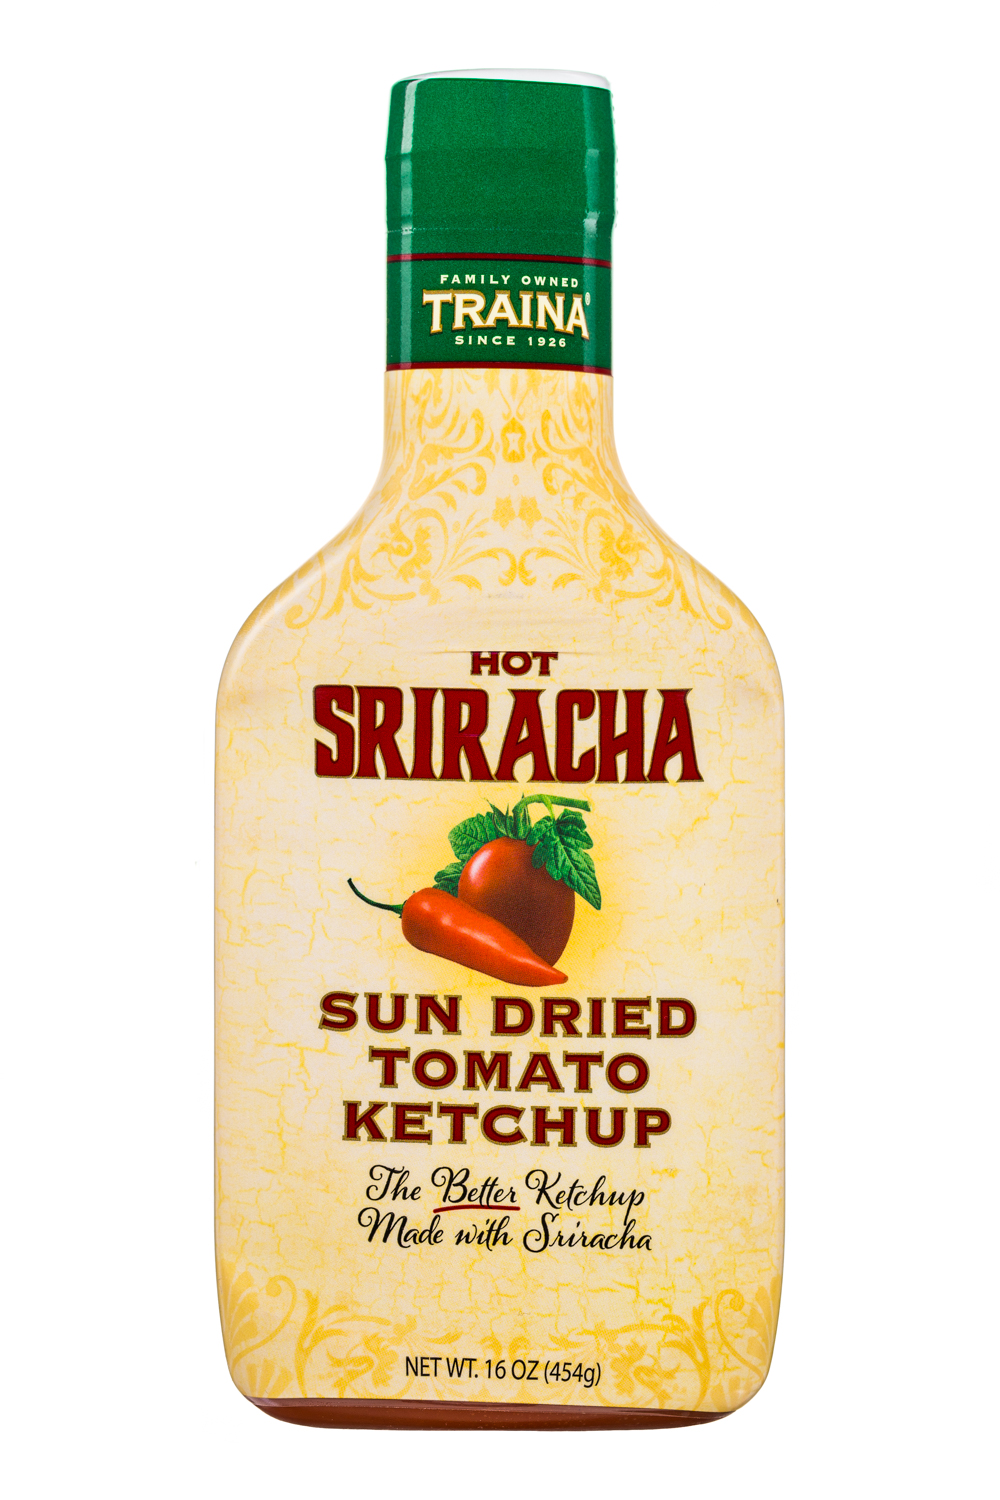 Hot Sriracha tomato ketchup